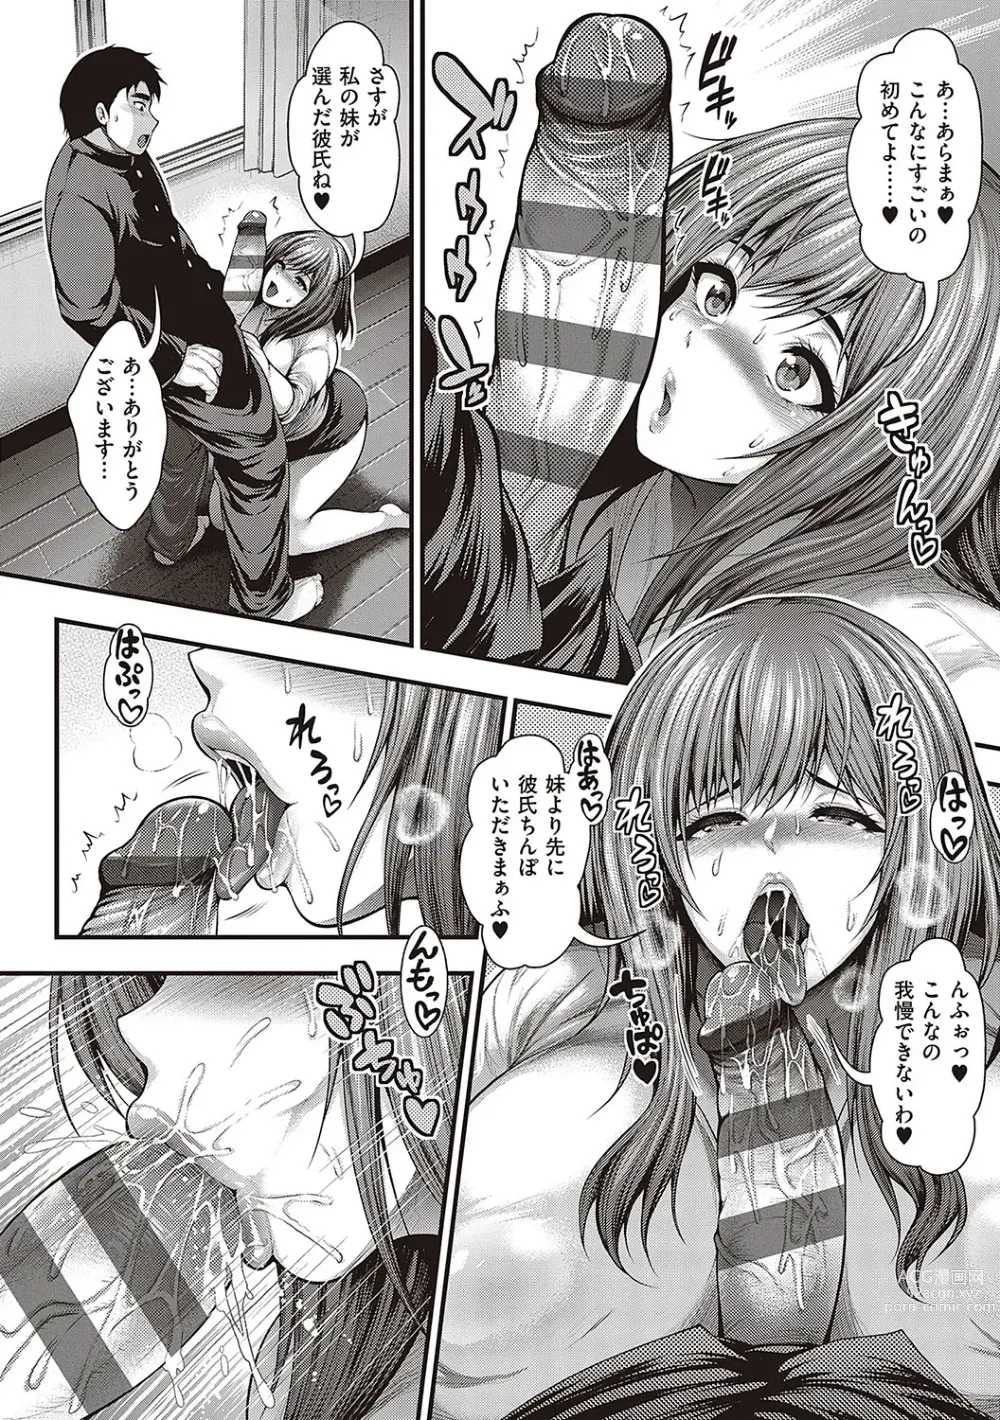 Page 11 of manga Arigatou, Kami Chichi.